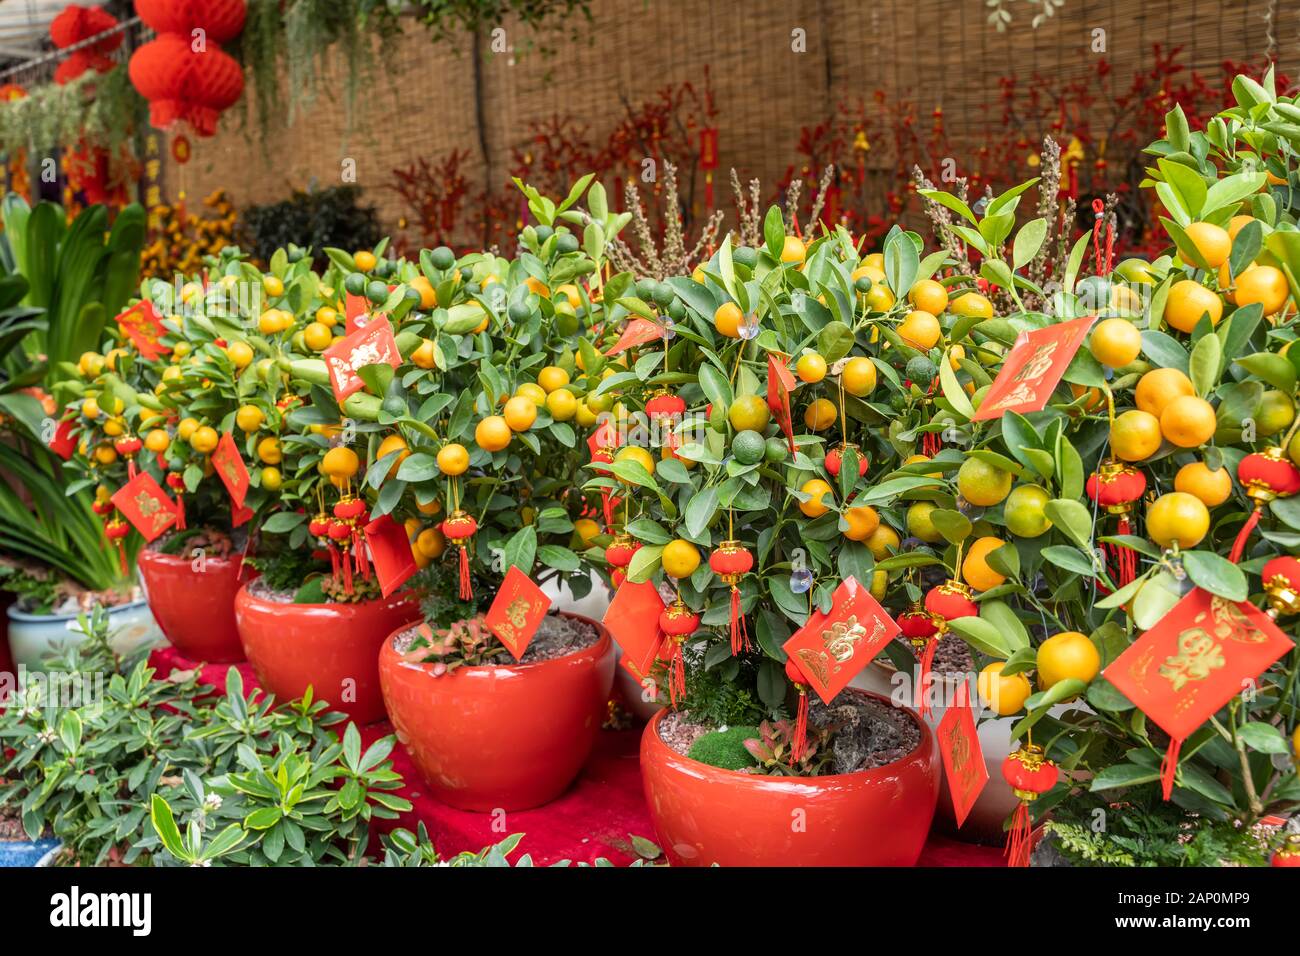 Fête du printemps le Nouvel An chinois décoration enveloppe rouge sur l'orange tree,traduction:signifie calligraphie meilleurs vœux pour le nouvel an chinois Banque D'Images